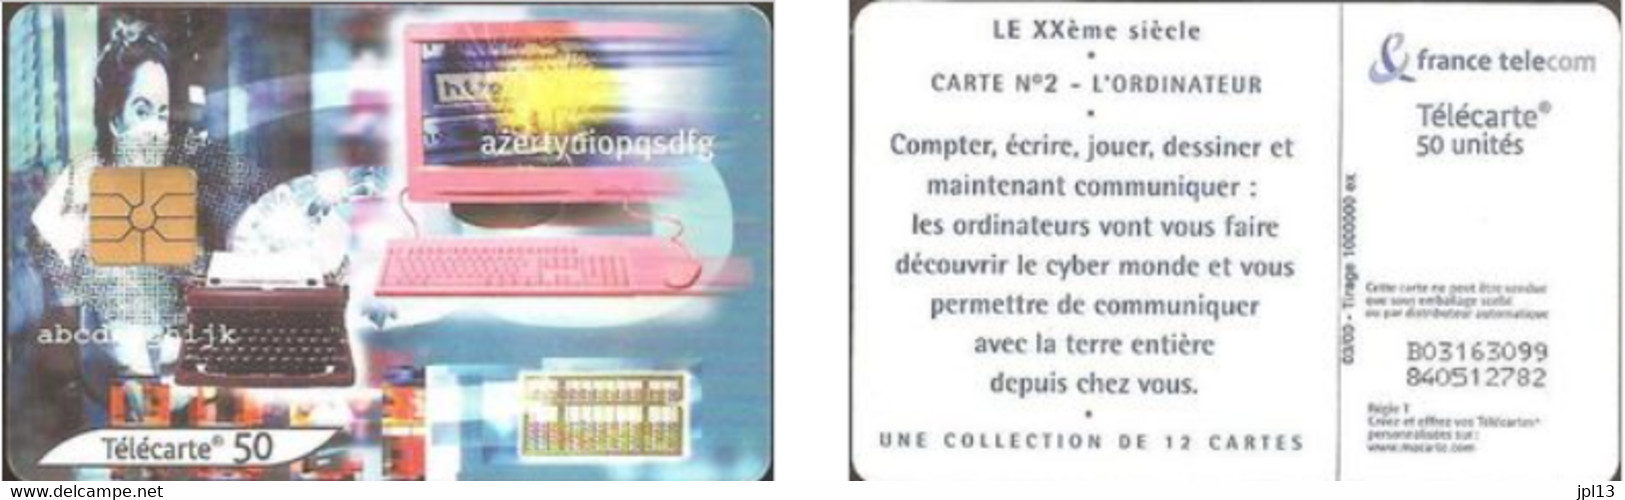 Carte à Puce - France Télécom - Le XXe Siecle N. 2 - Ordinateur (GEM1A Black), Réf. 1049 - 2000